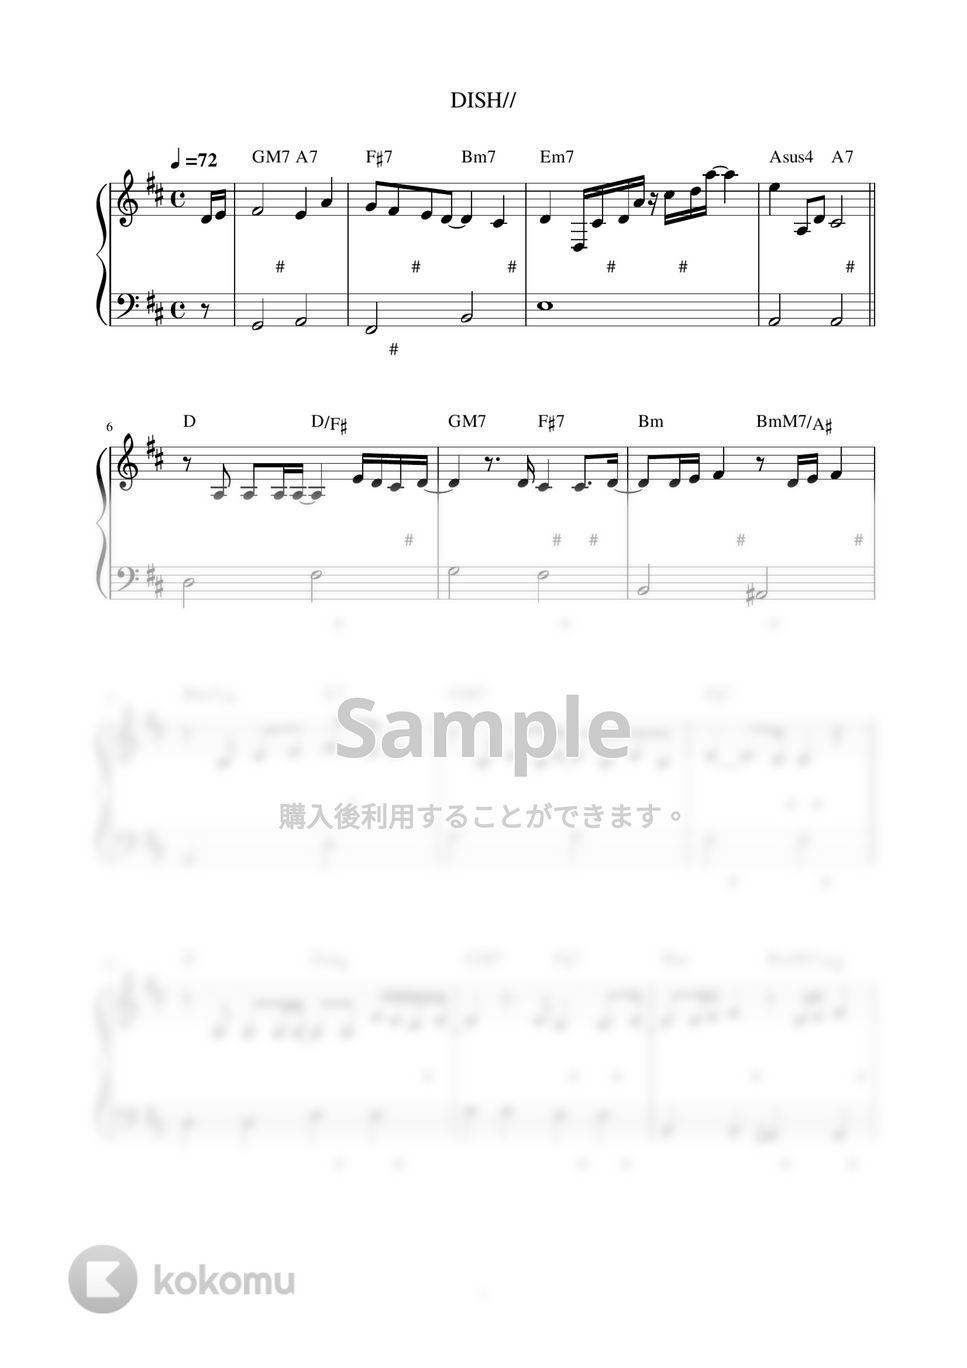 DISH// - 五明後日 (ピアノ楽譜 / かんたん両手 / 歌詞付き / ドレミ付き / 初心者向き) by piano.tokyo